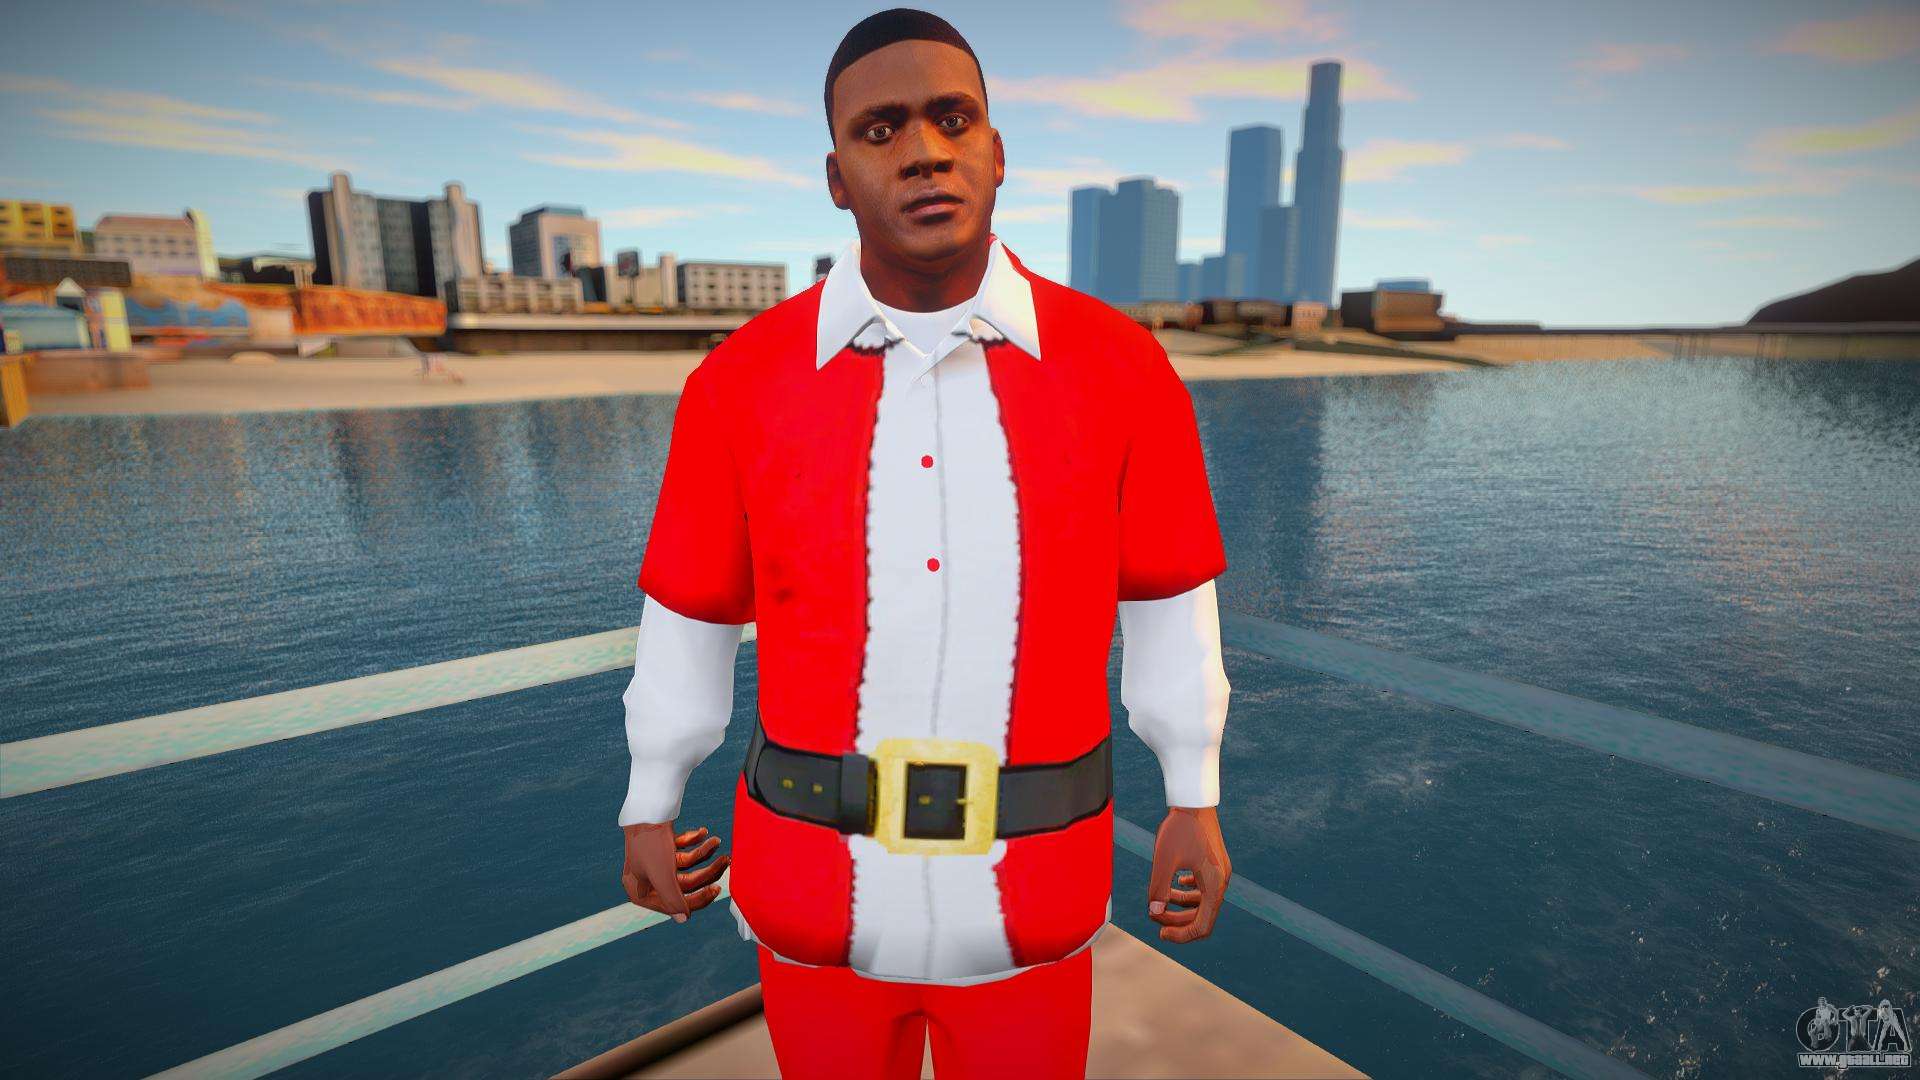 Franklin en traje de Navidad para GTA San Andreas